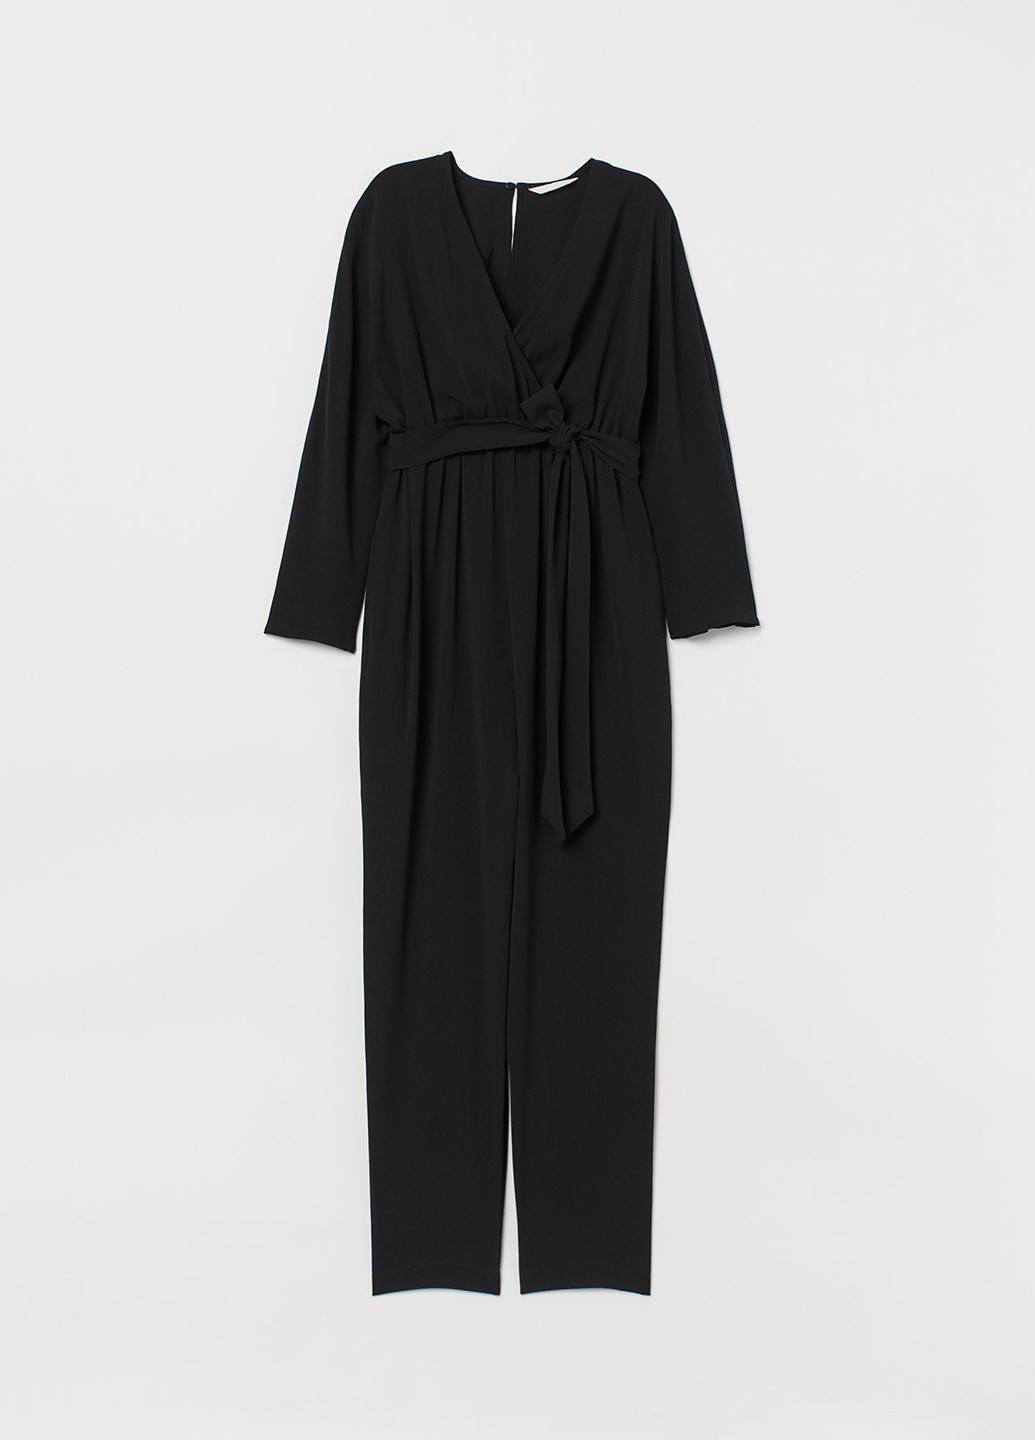 Комбинезон для беременных H&M комбинезон-брюки однотонный чёрный кэжуал трикотаж, полиэстер